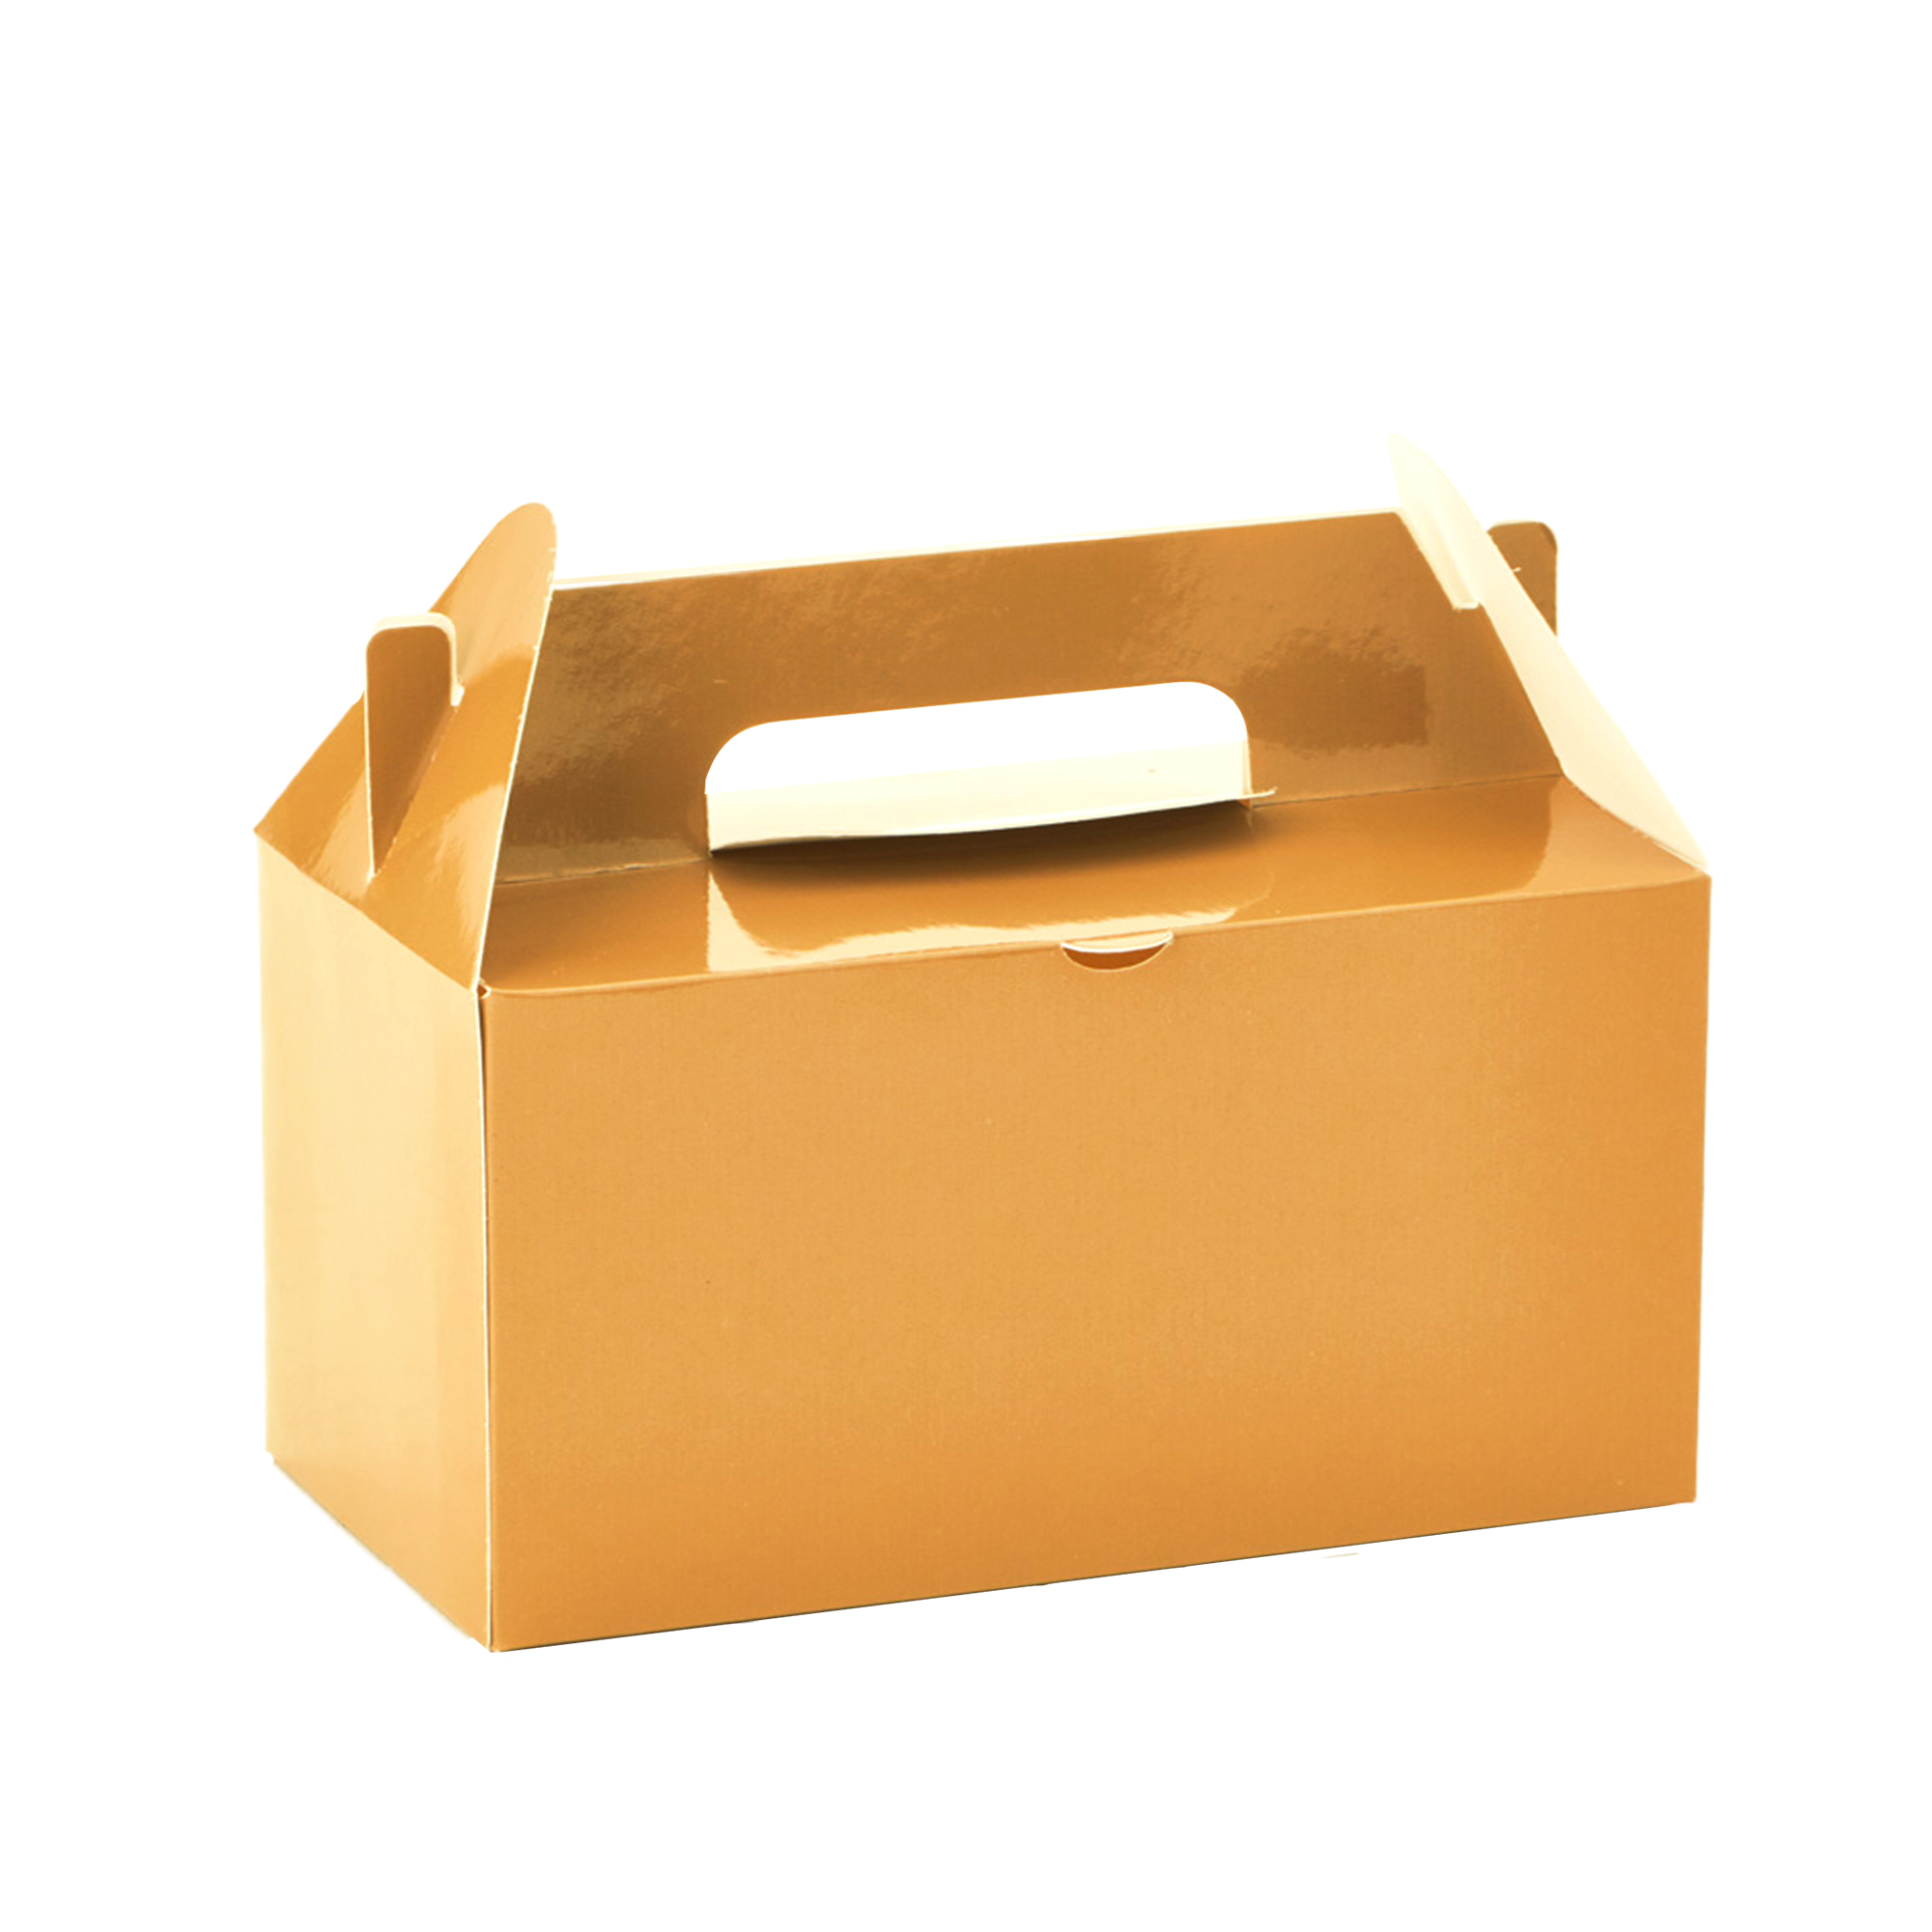 Takeout Box 12pcs/bag - Gold